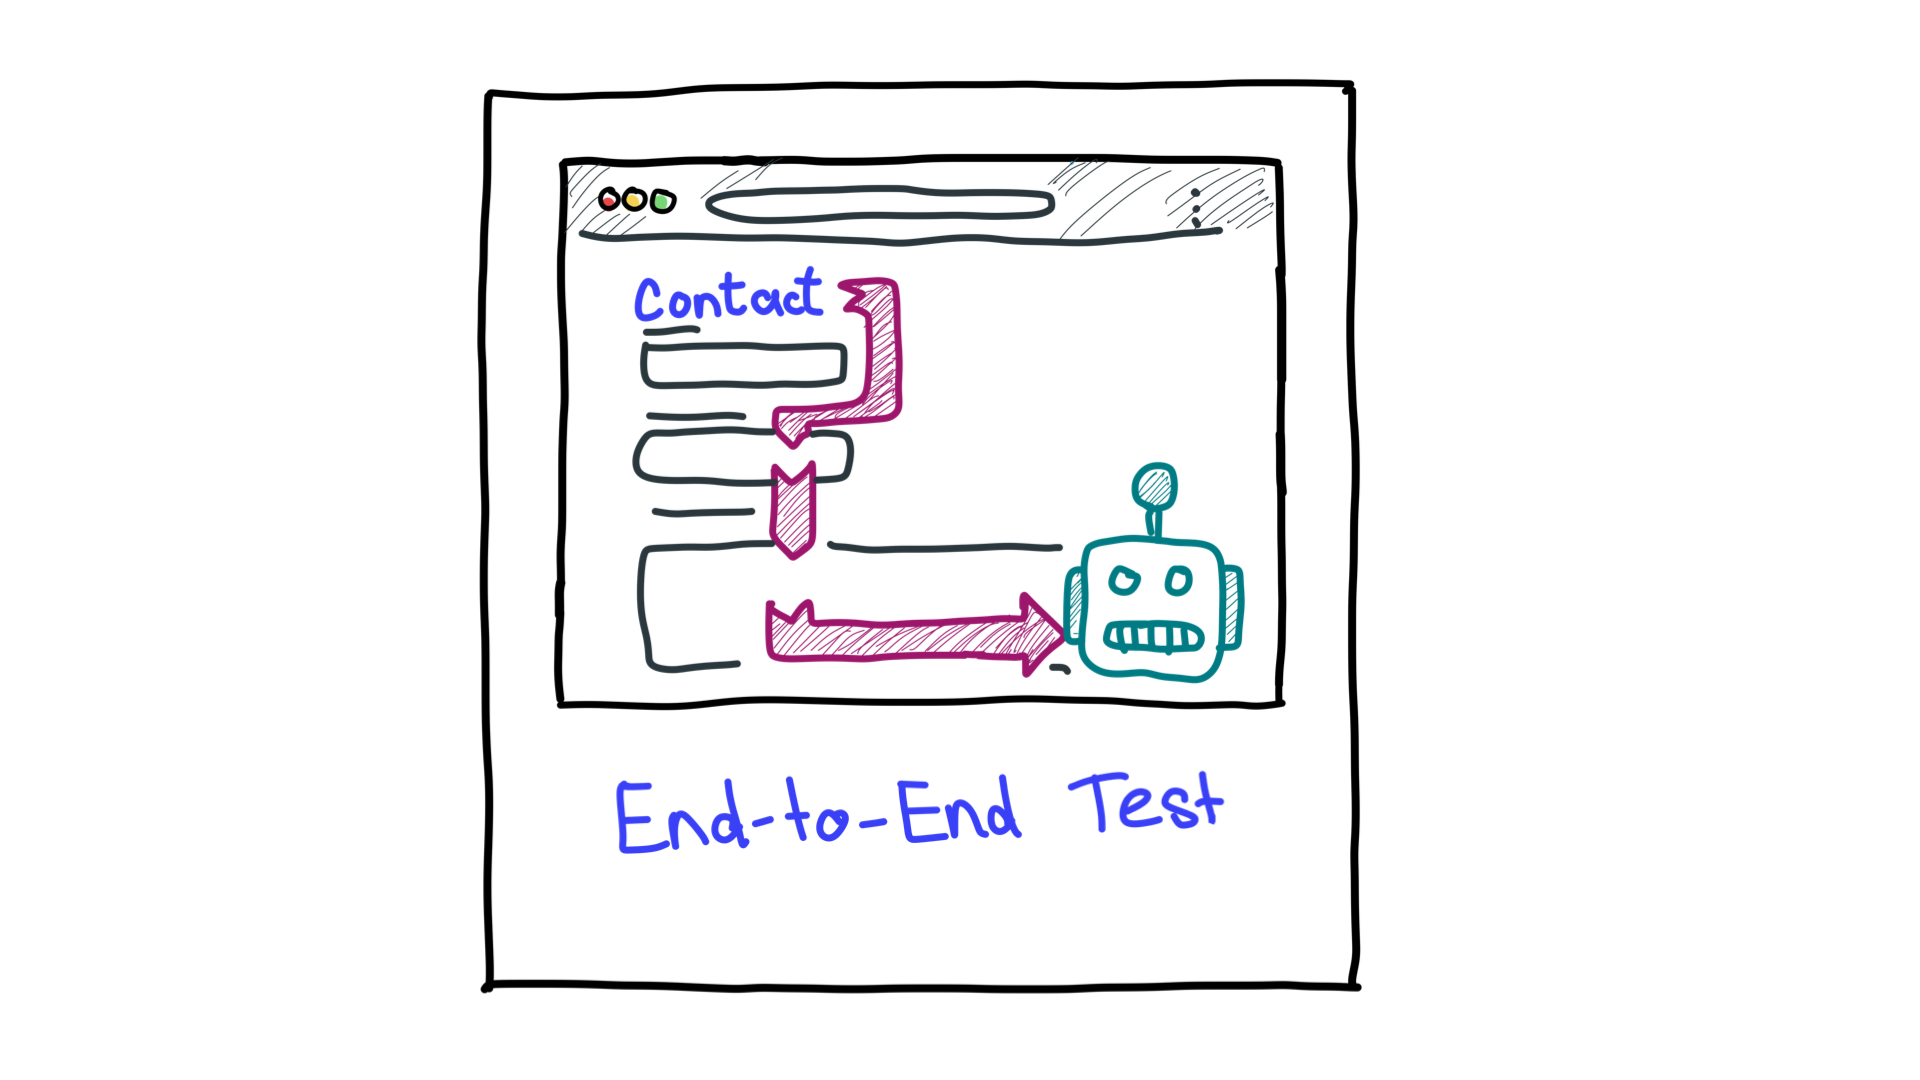 Eine vereinfachte Darstellung von End-to-End-Tests, die einen Computer als Roboter zeigt, der einen Workflow betrachtet.